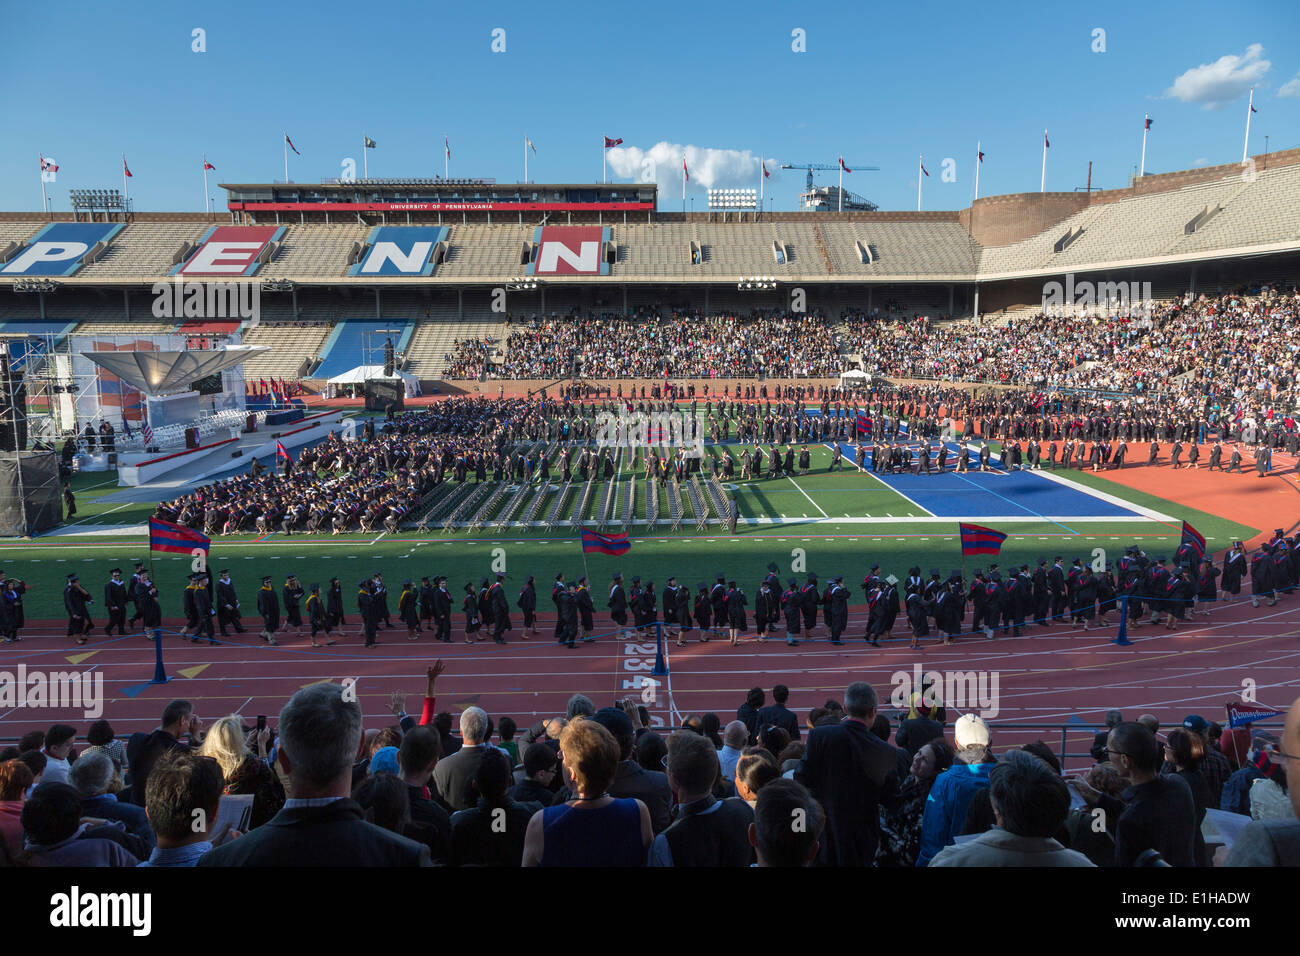 Cérémonie pour les étudiants en sciences humaines de l'Université de Pennsylvanie, Franklin Field Stadium, Philadelphie, USA Banque D'Images